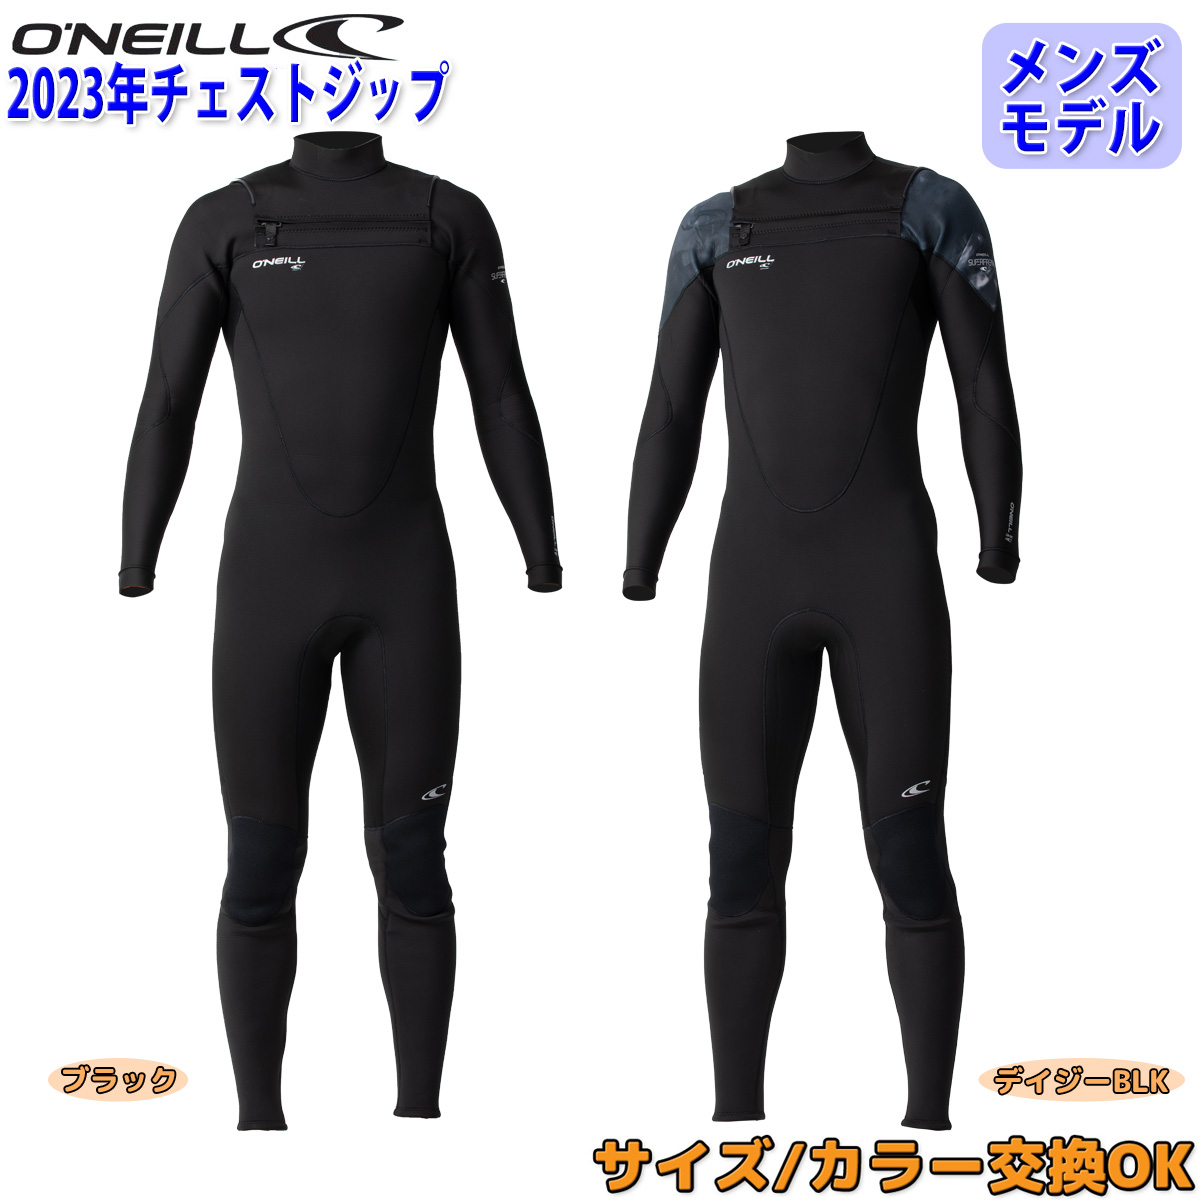 【楽天市場】23-24 O'NEILL オニール サーフィン ウェットスーツ 